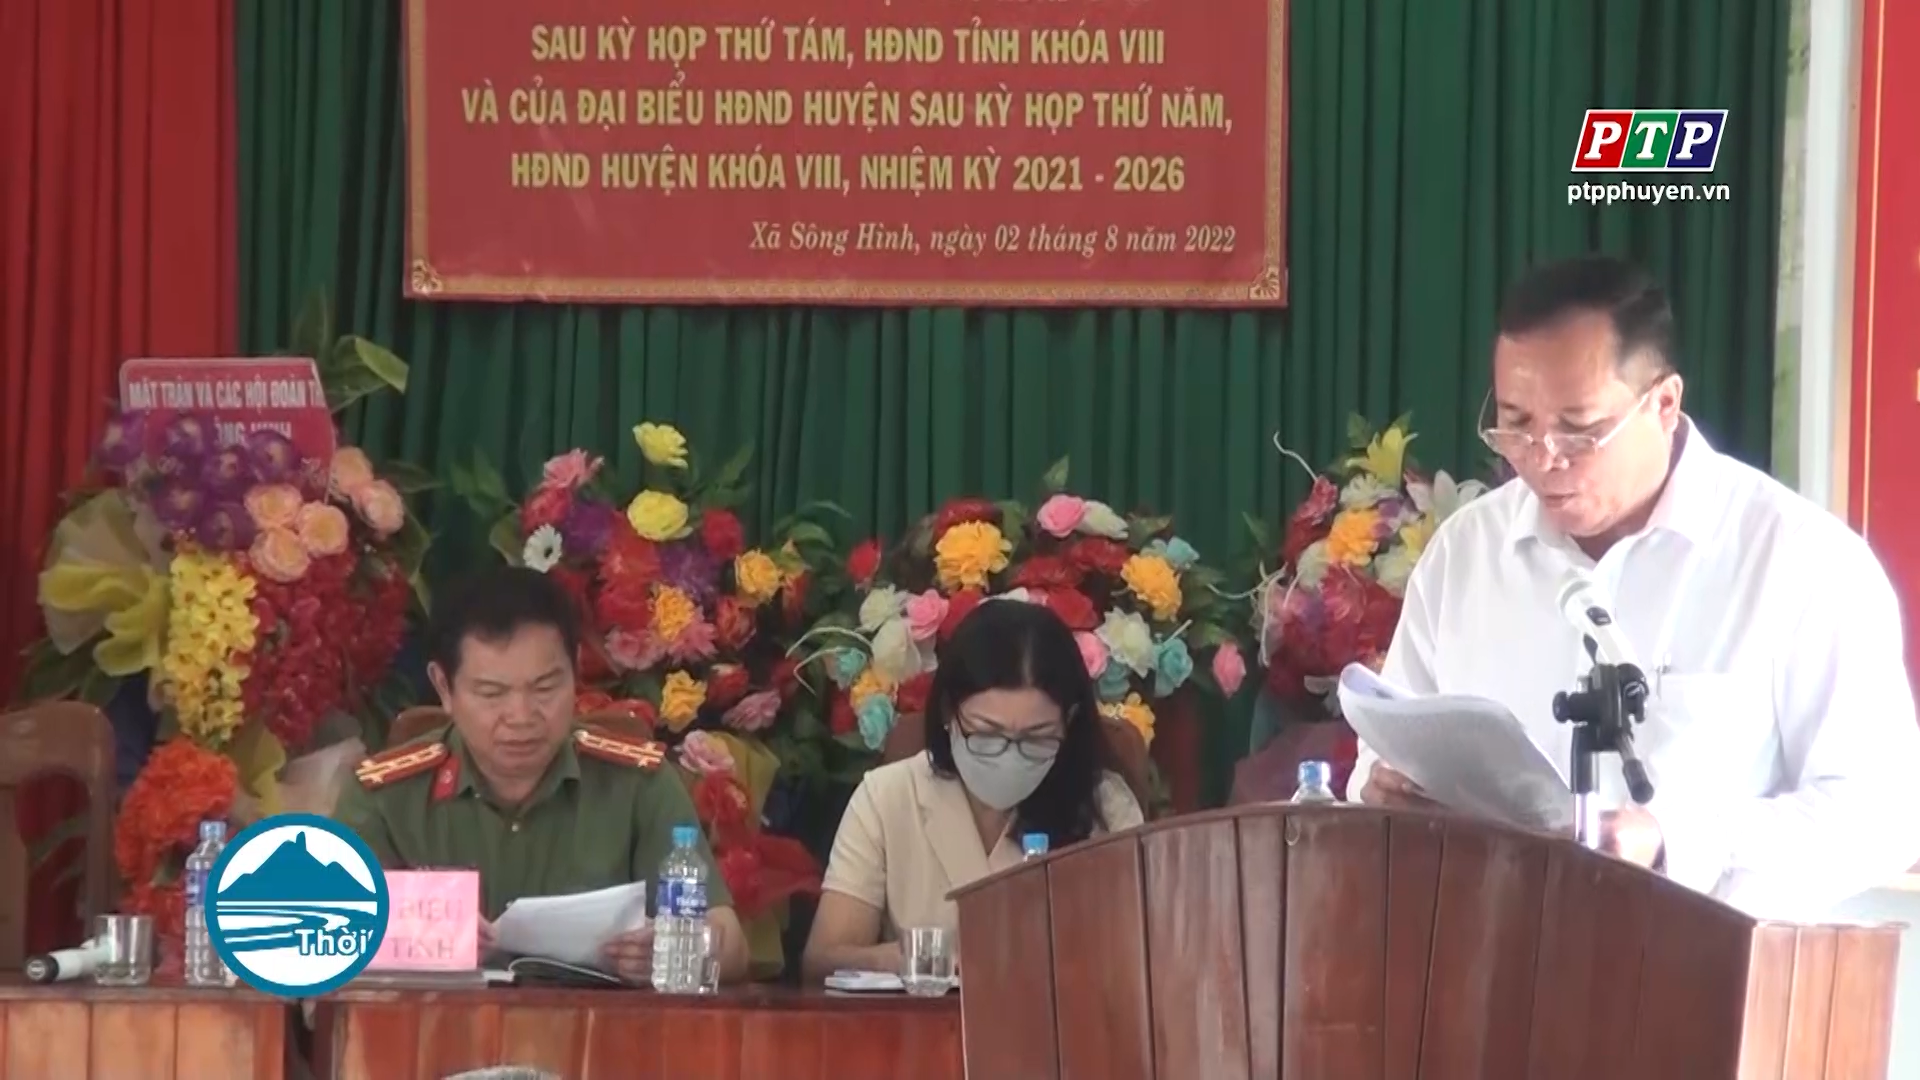 Đại biểu HĐND tỉnh Phú Yên tiếp xúc với cử tri huyện Sông Hinh sau kỳ họp thứ 8